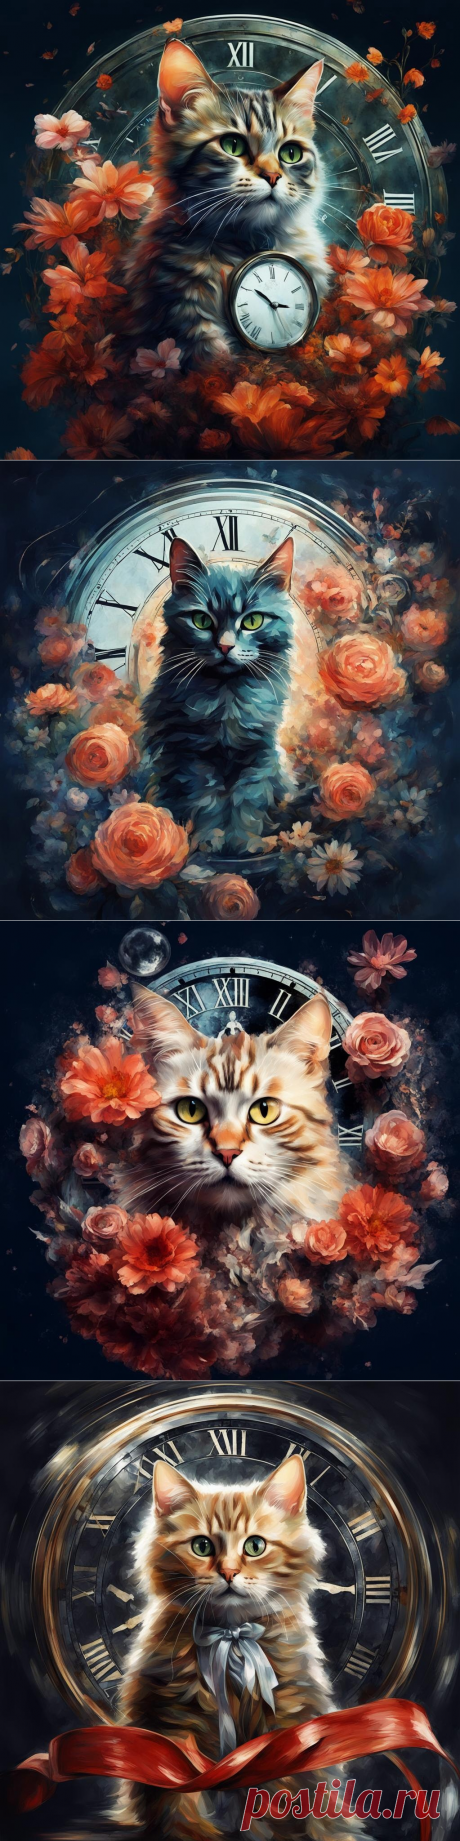 Коты,часы,цветы.(нейросеть) от Дженнет Ермолик